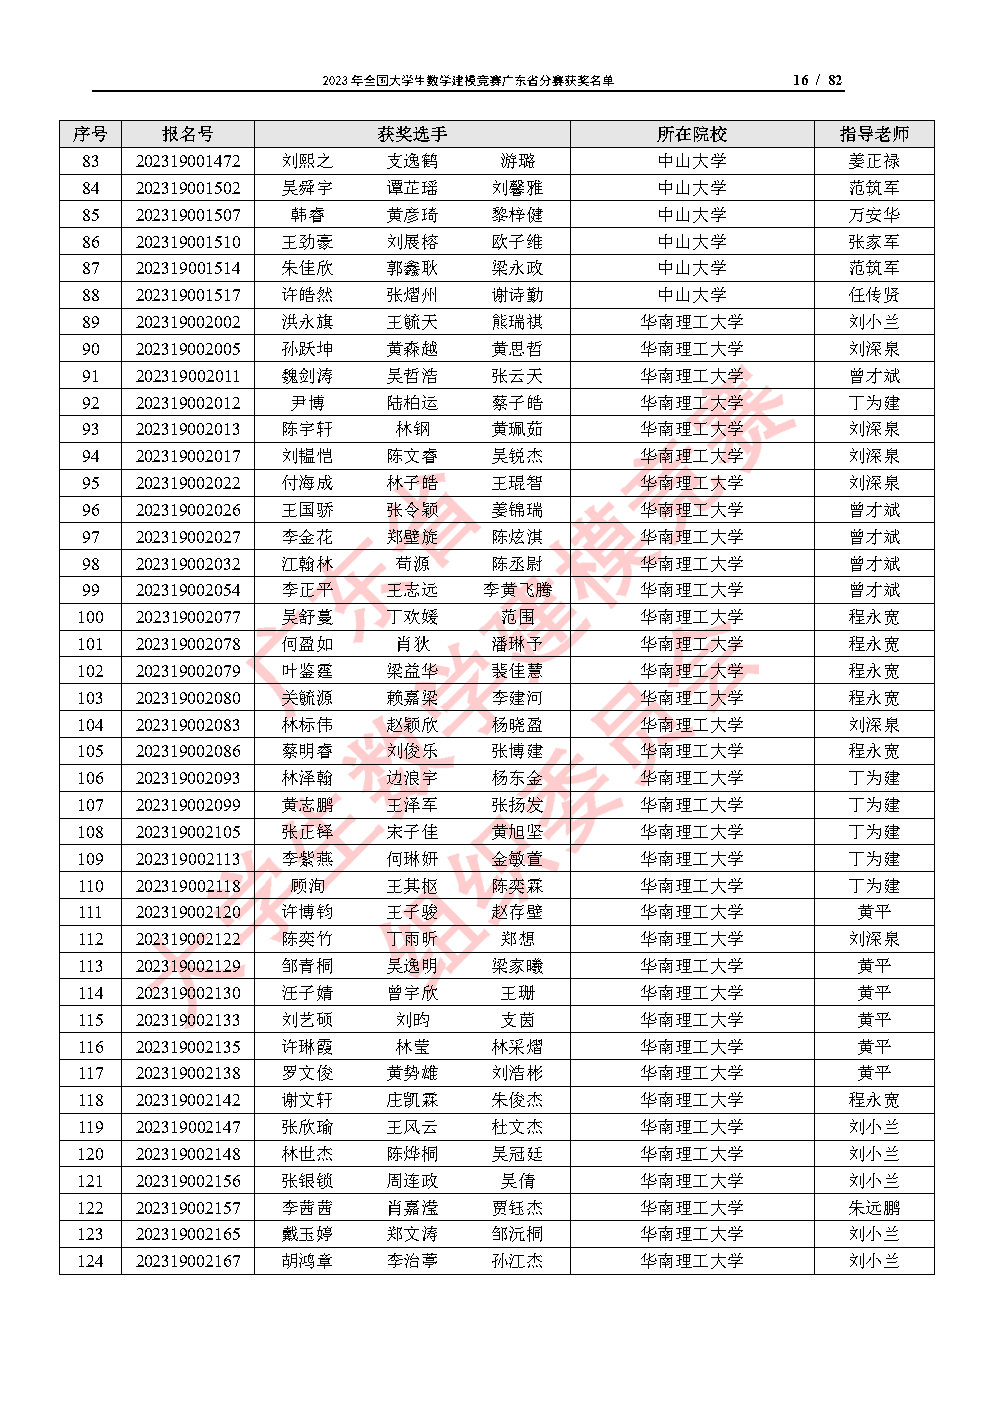 2023年全国大学生数学建模竞赛广东省分赛获奖名单_Page16.jpg